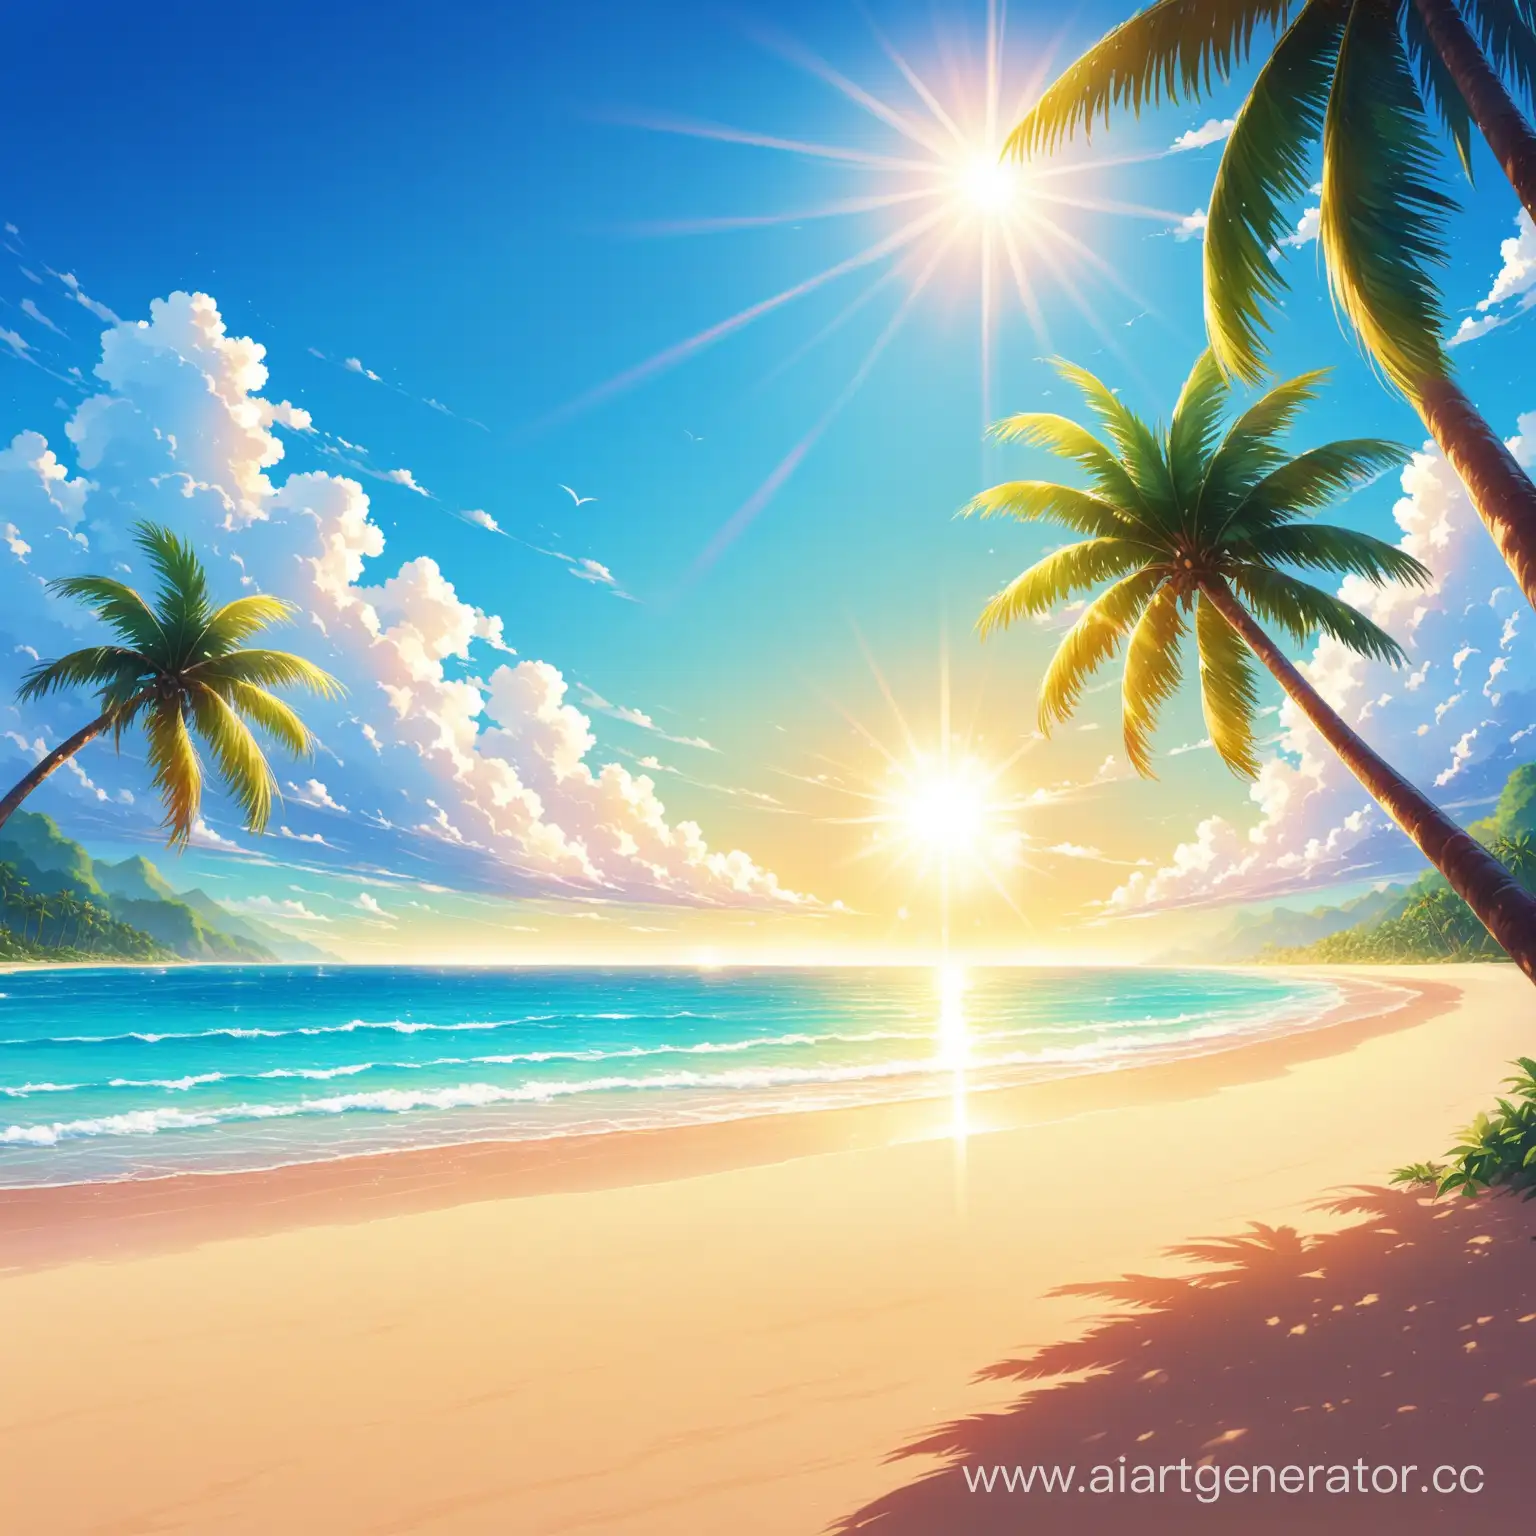 пляж и пальмы на небе с очень ярким солнцем